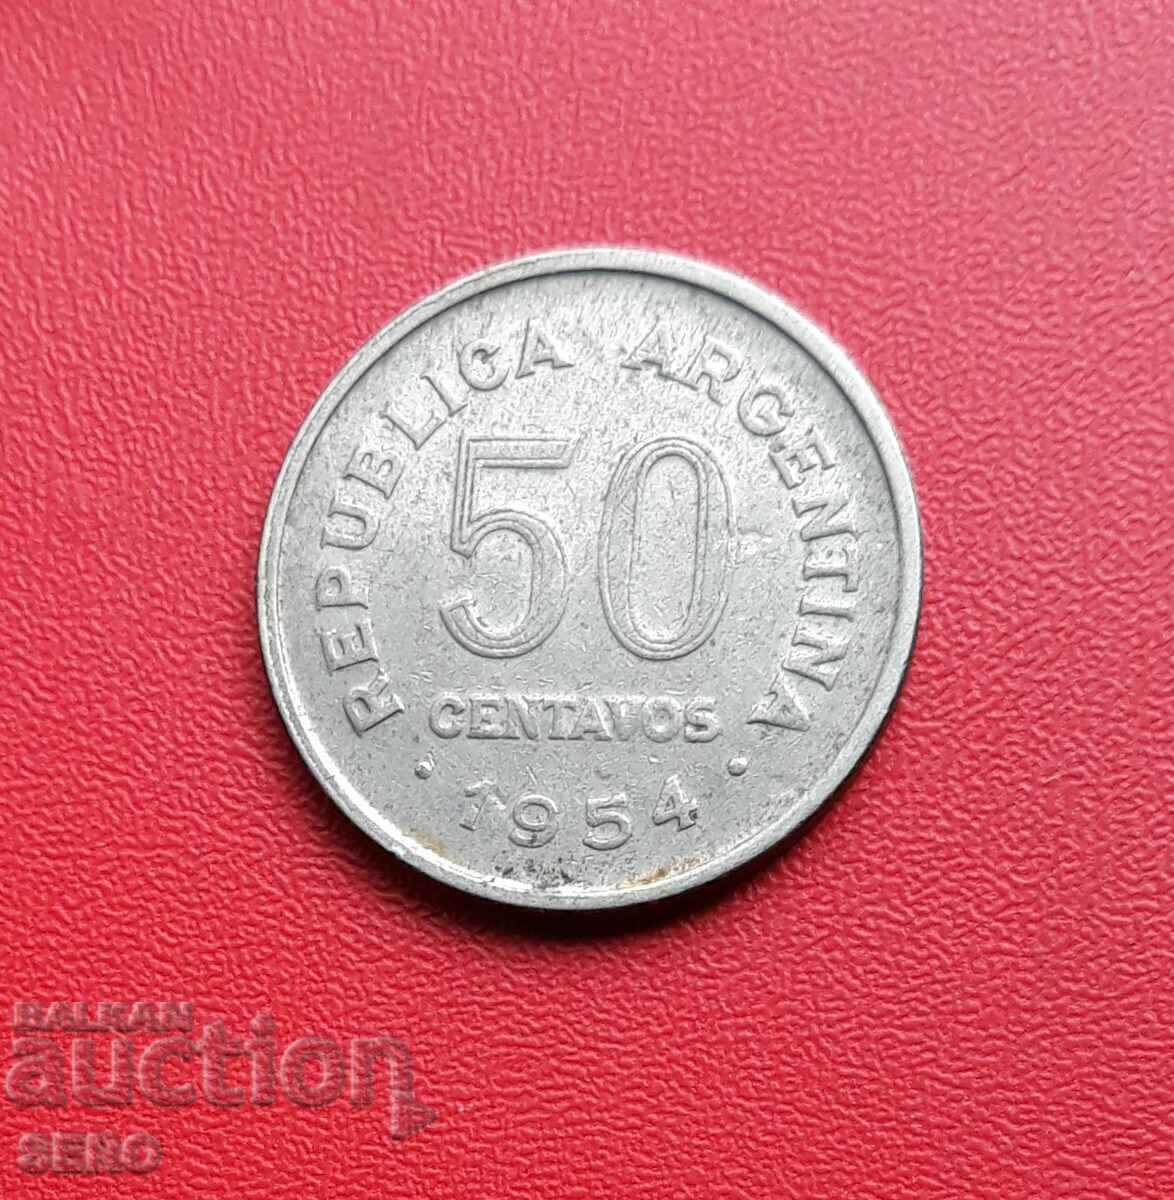 Argentina-50 centavos 1954